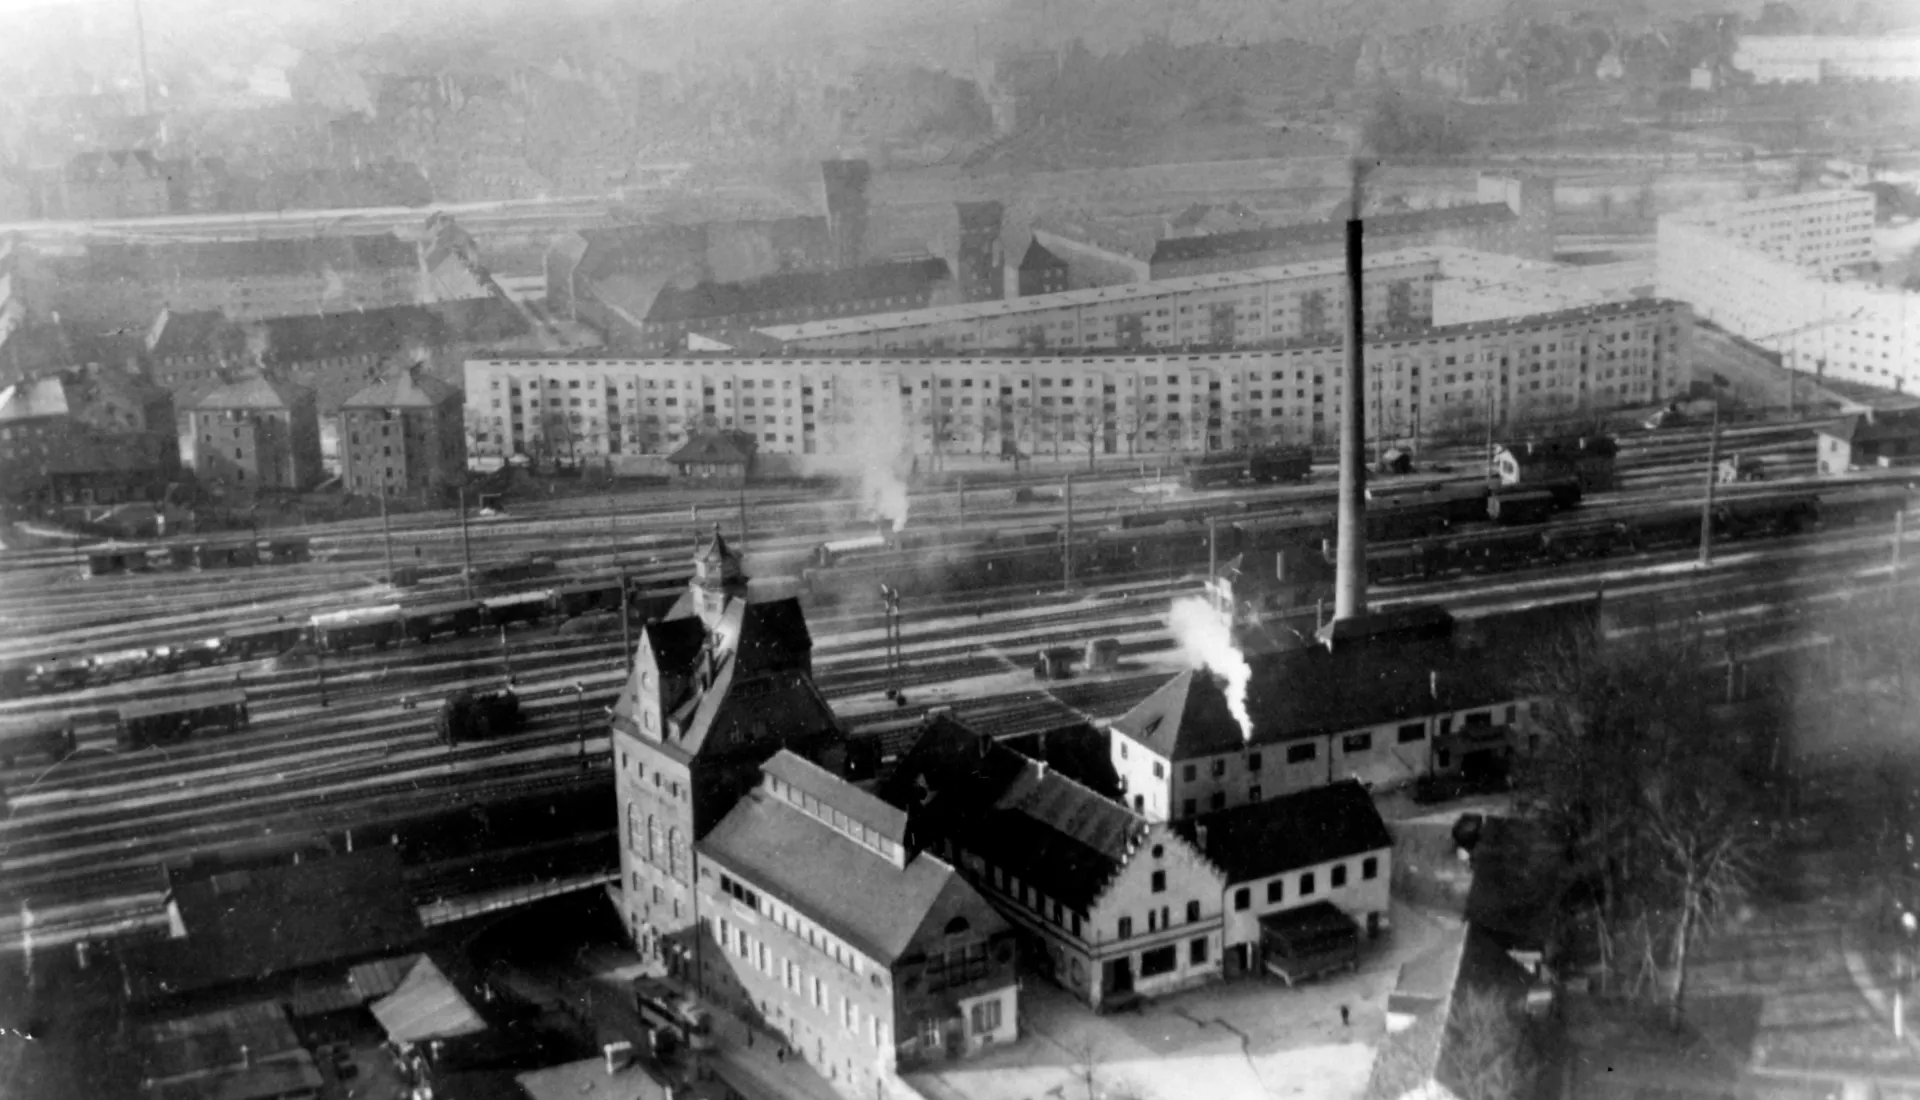 Eine historische Luftaufnahme der Riegele Brauerei